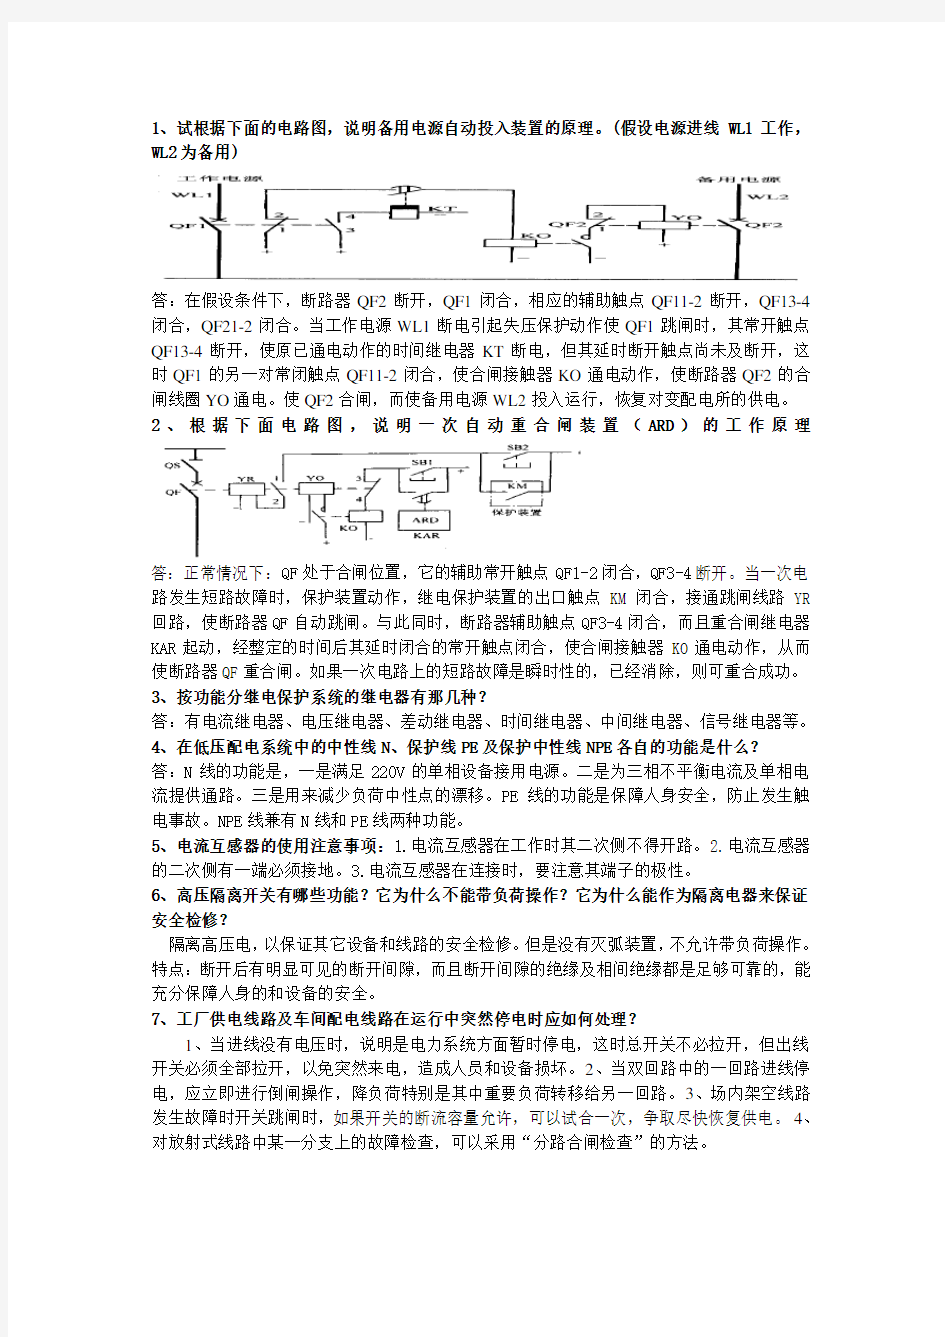 工厂供电(刘介才)期末考试问答题